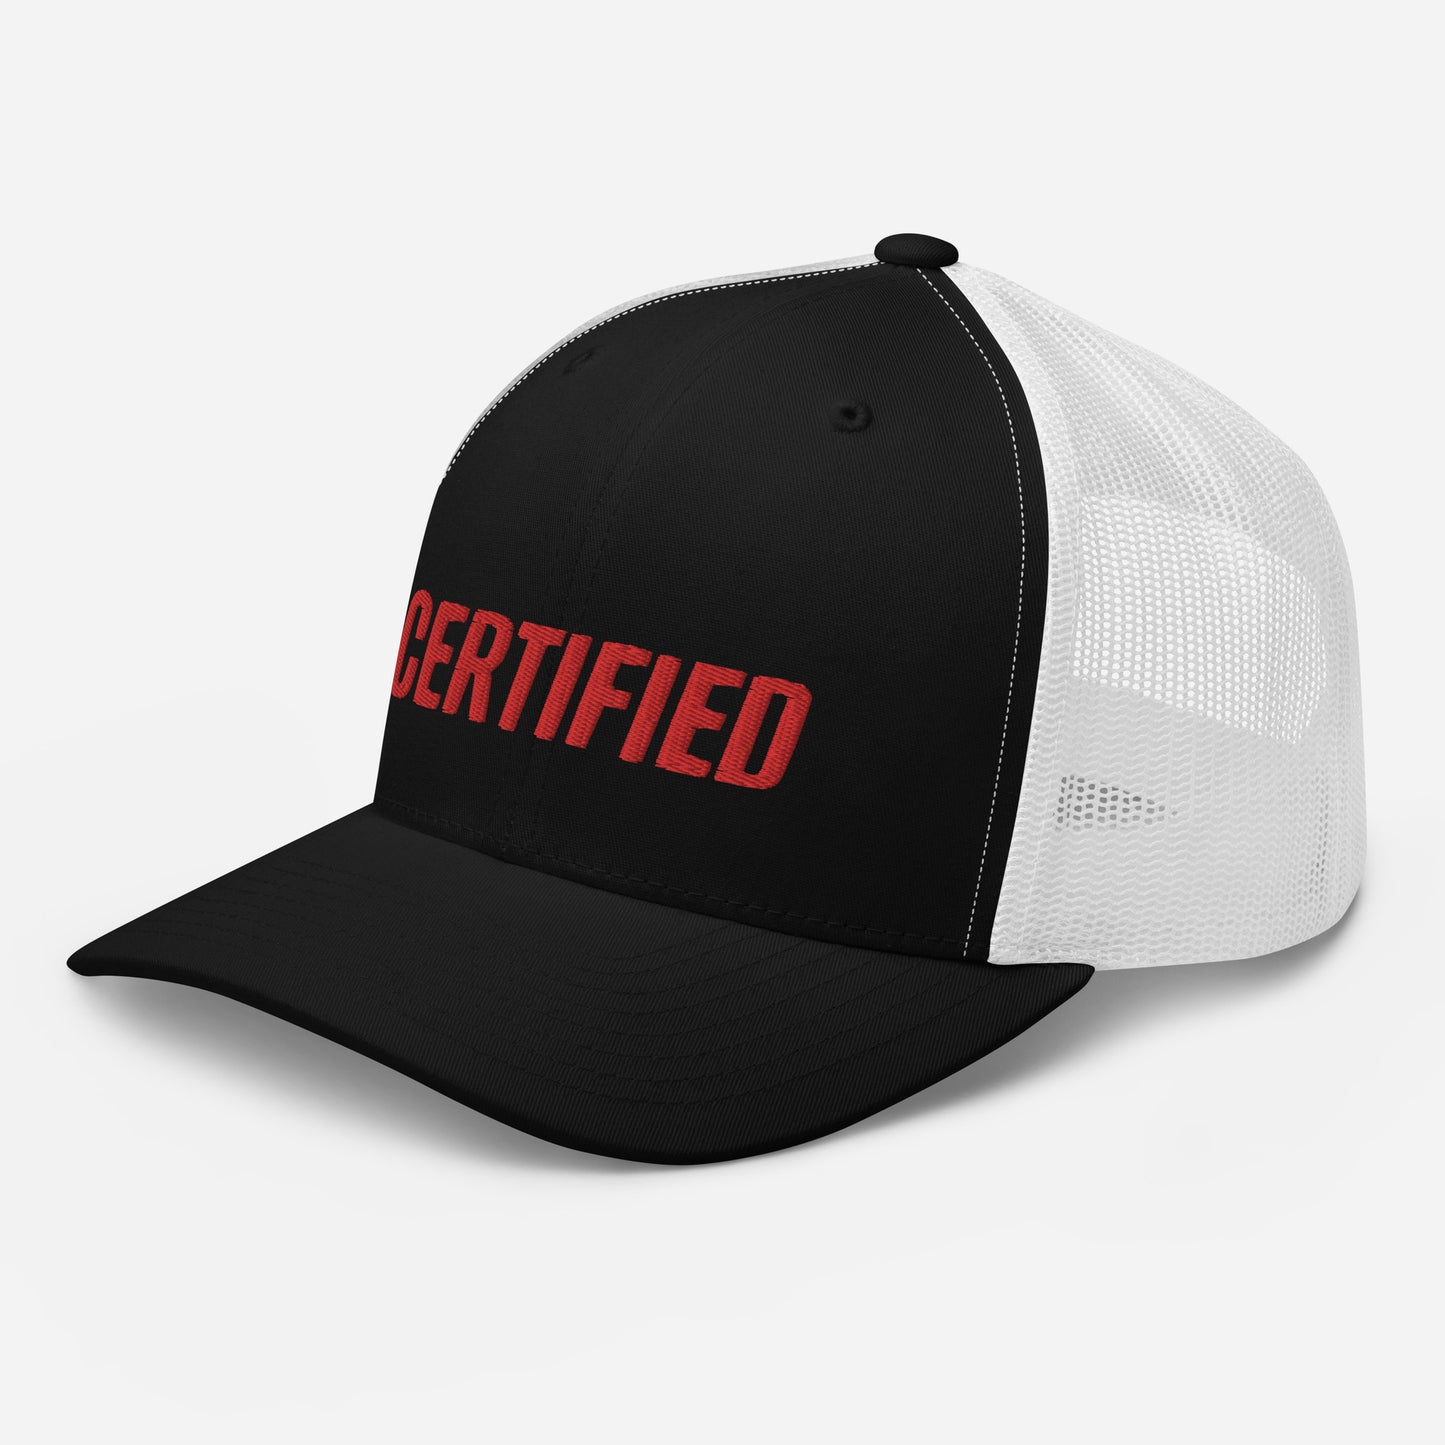 Certified Trucker Cap